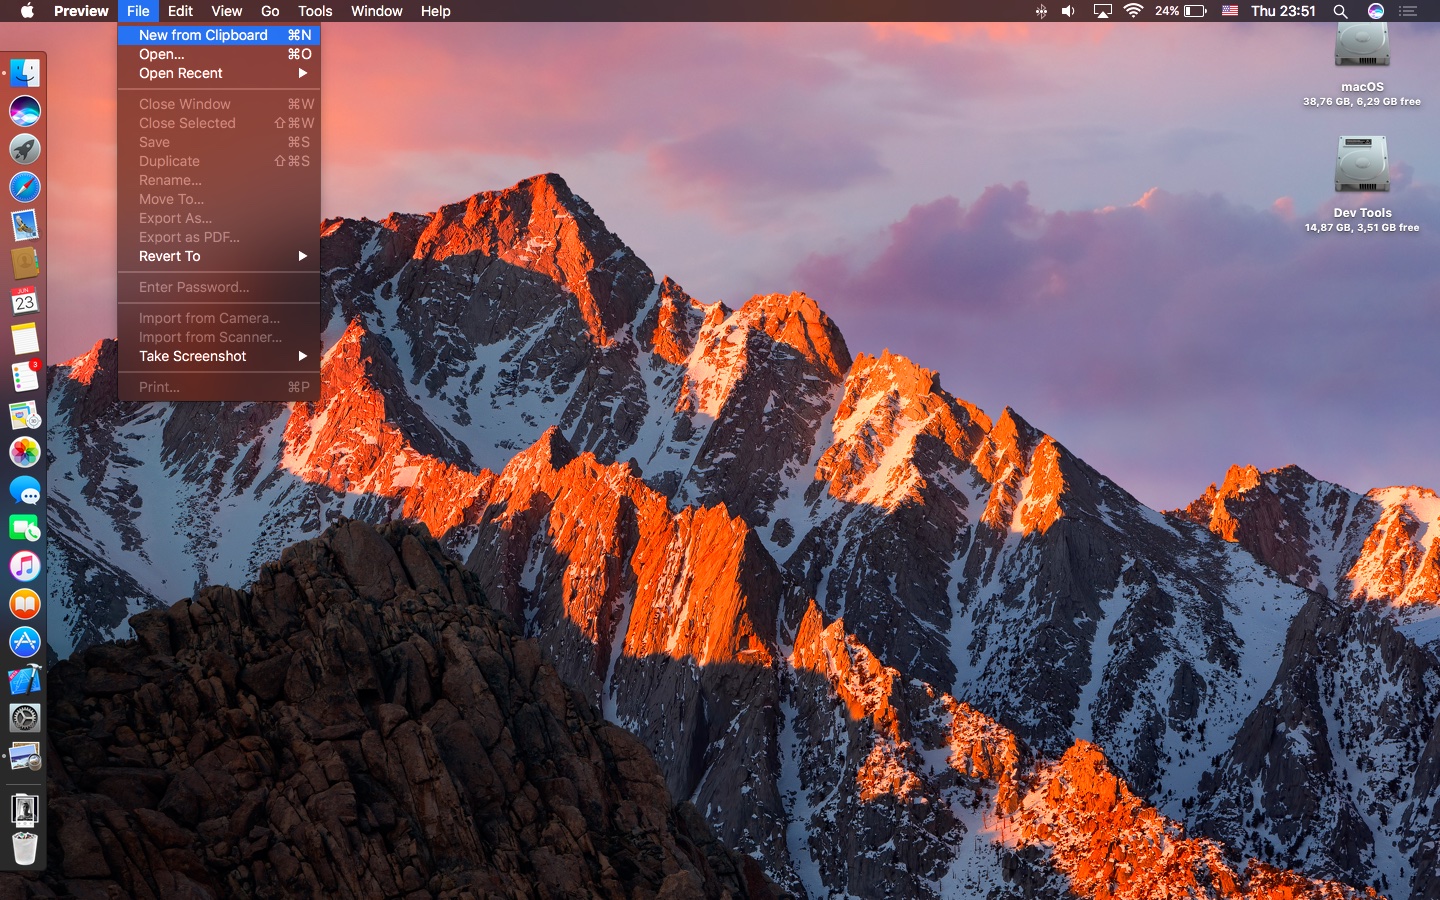 macOS-Sierra-Universal-Clipboard-image-Mac-screenshot-001.jpg